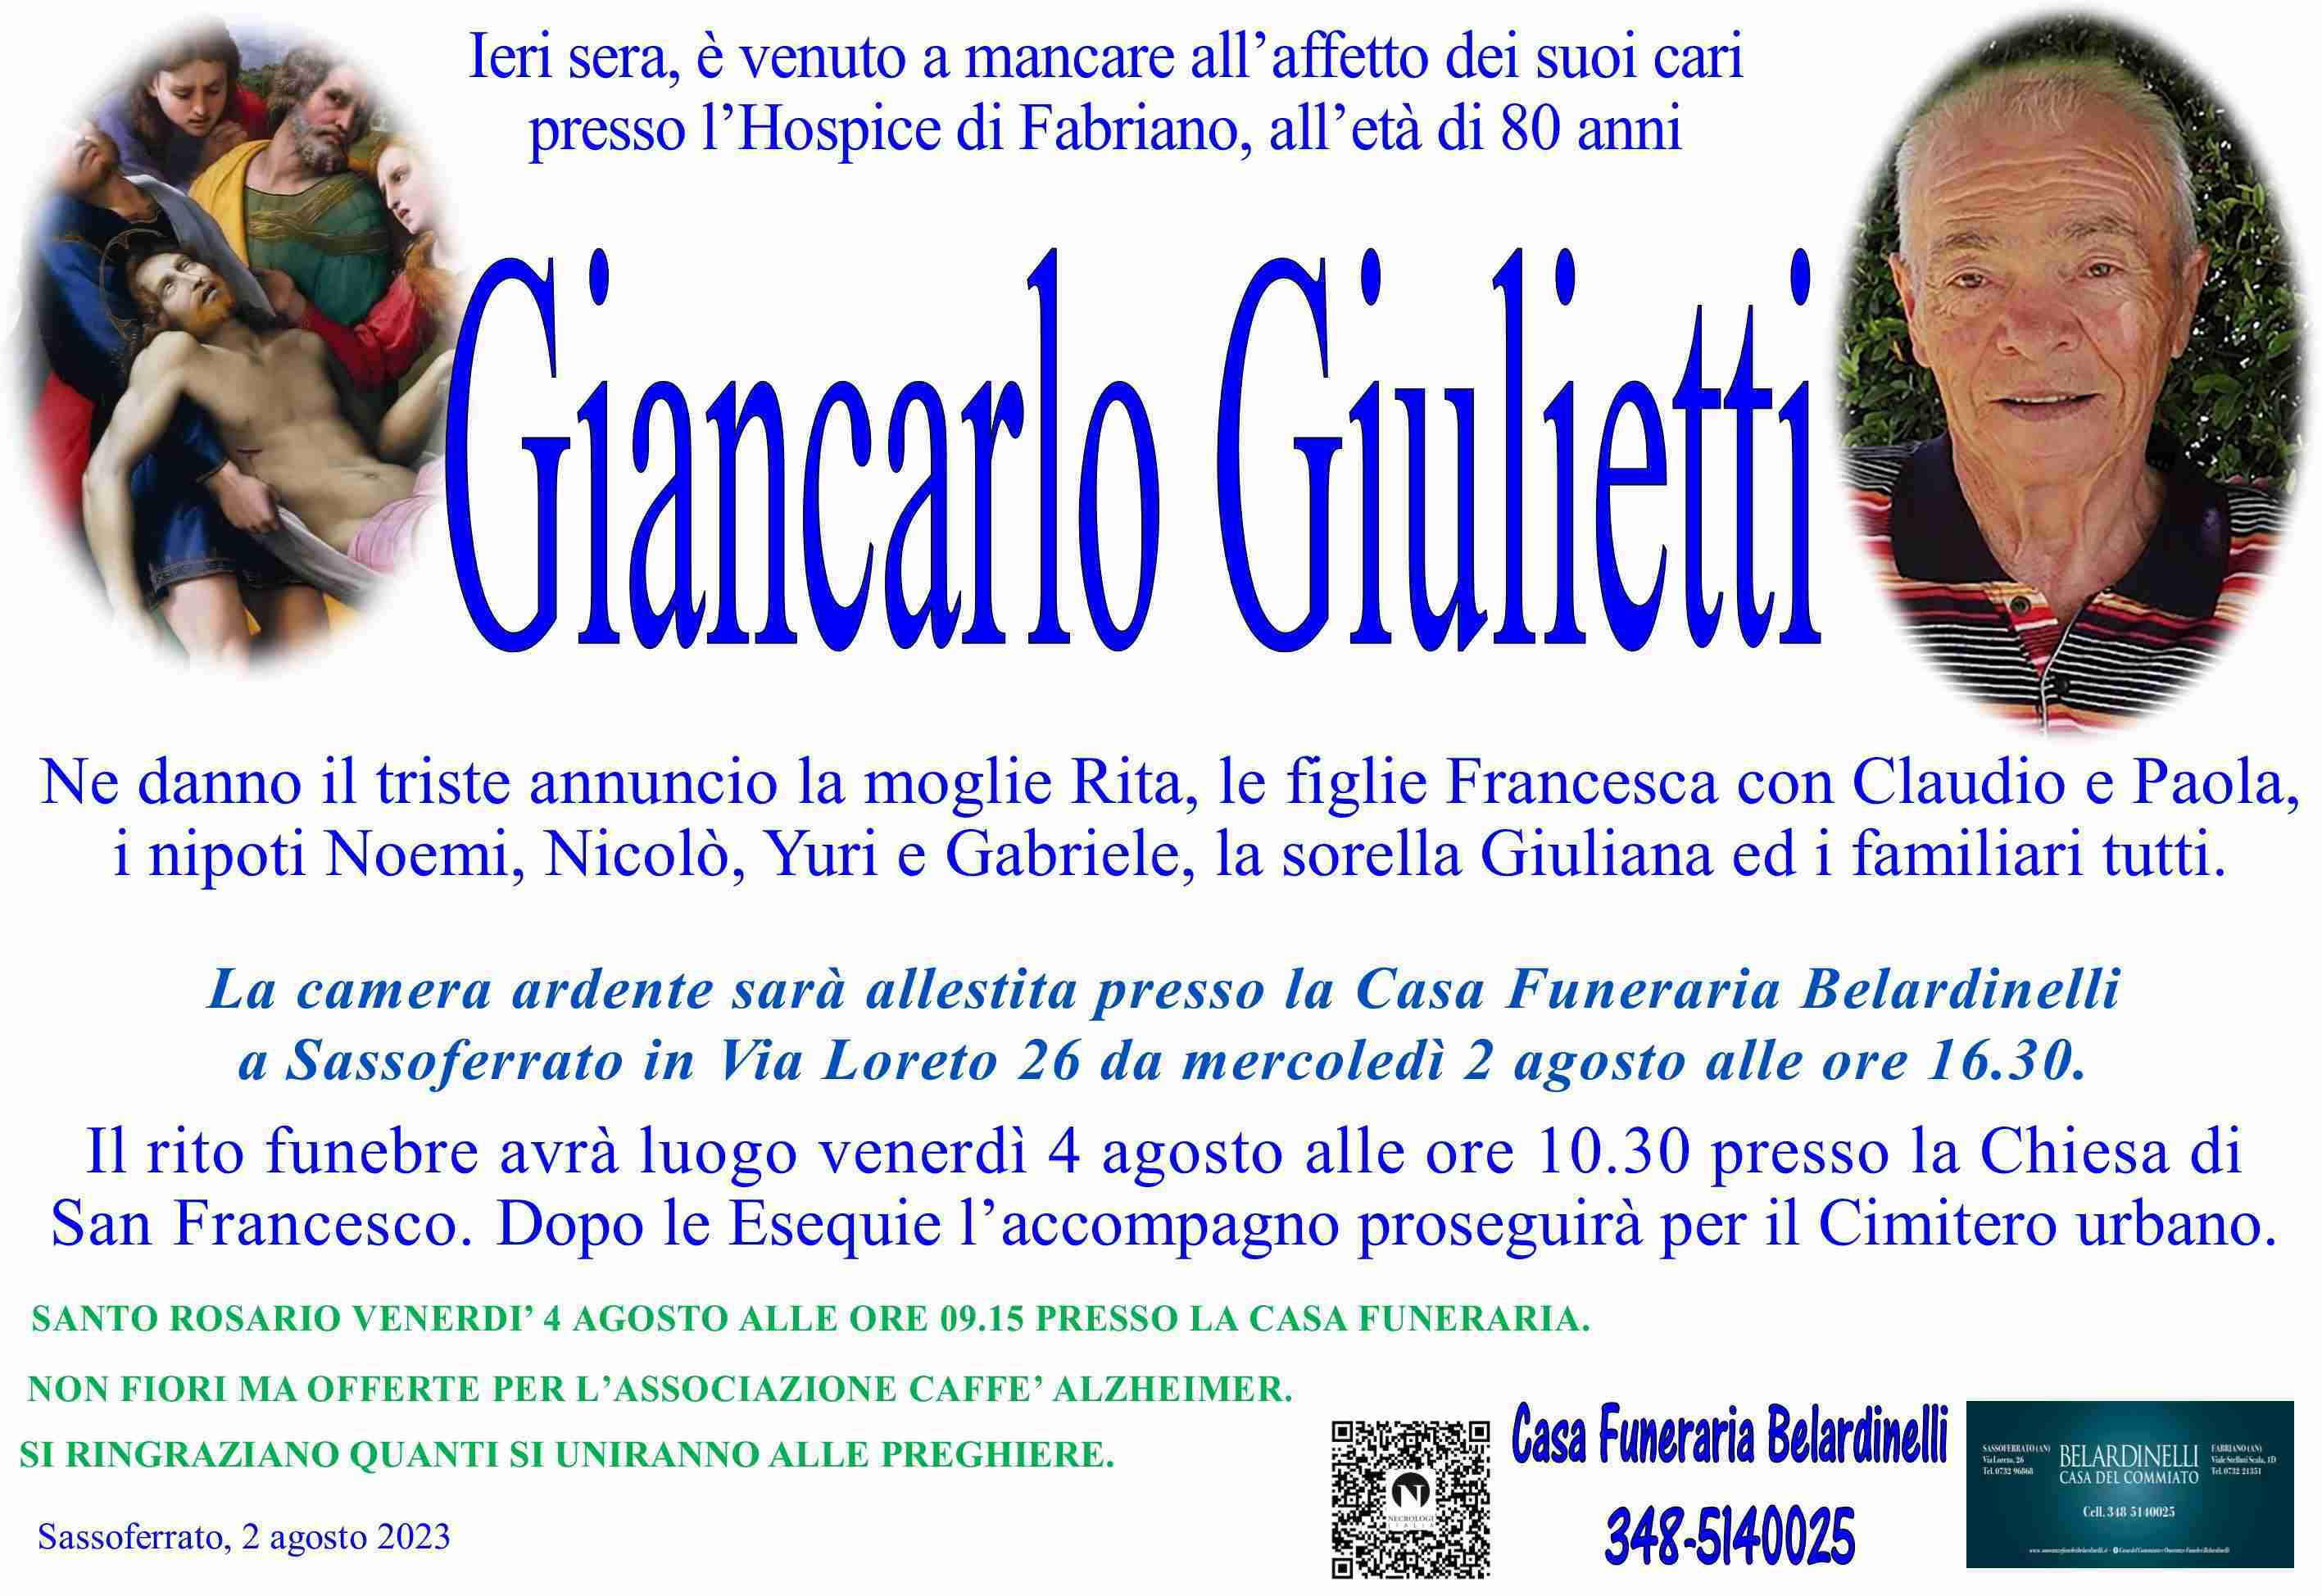 Giancarlo Giulietti